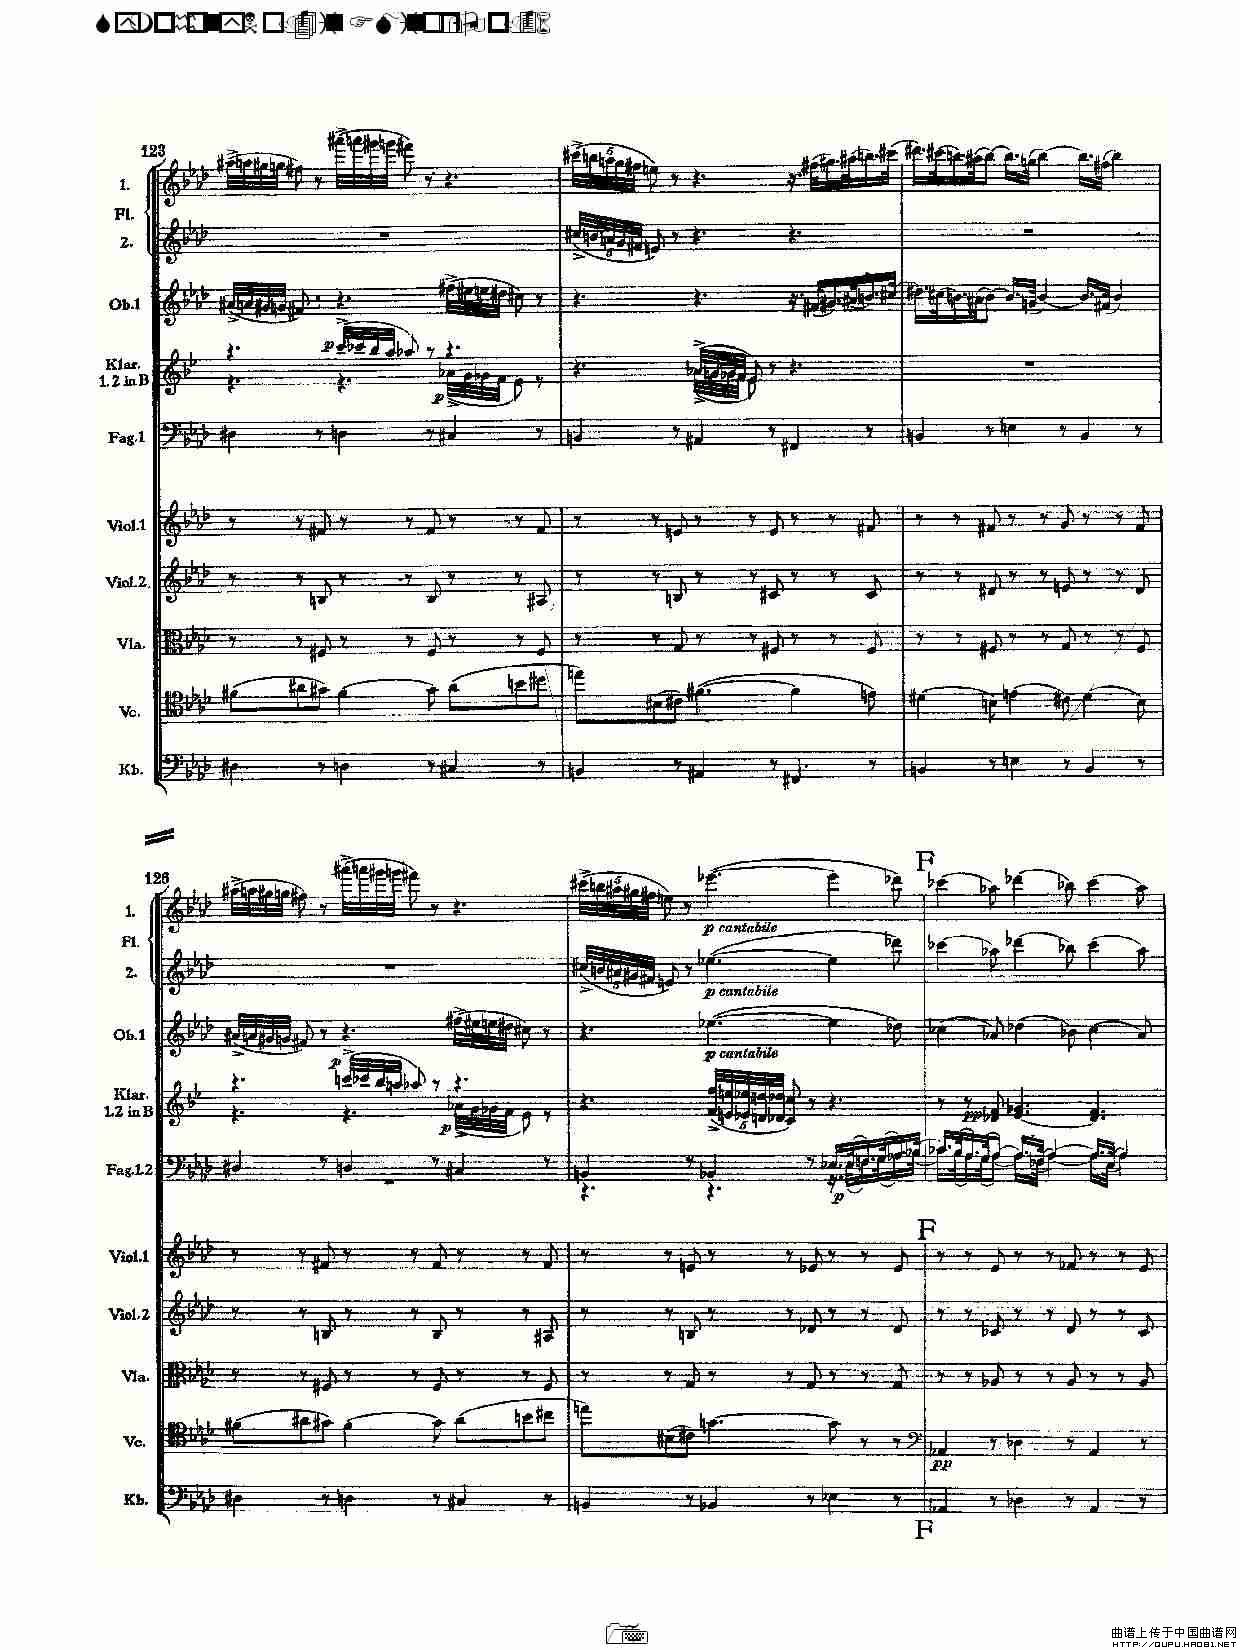 F小调第四交响曲,  Op. 36 第一乐章（一）